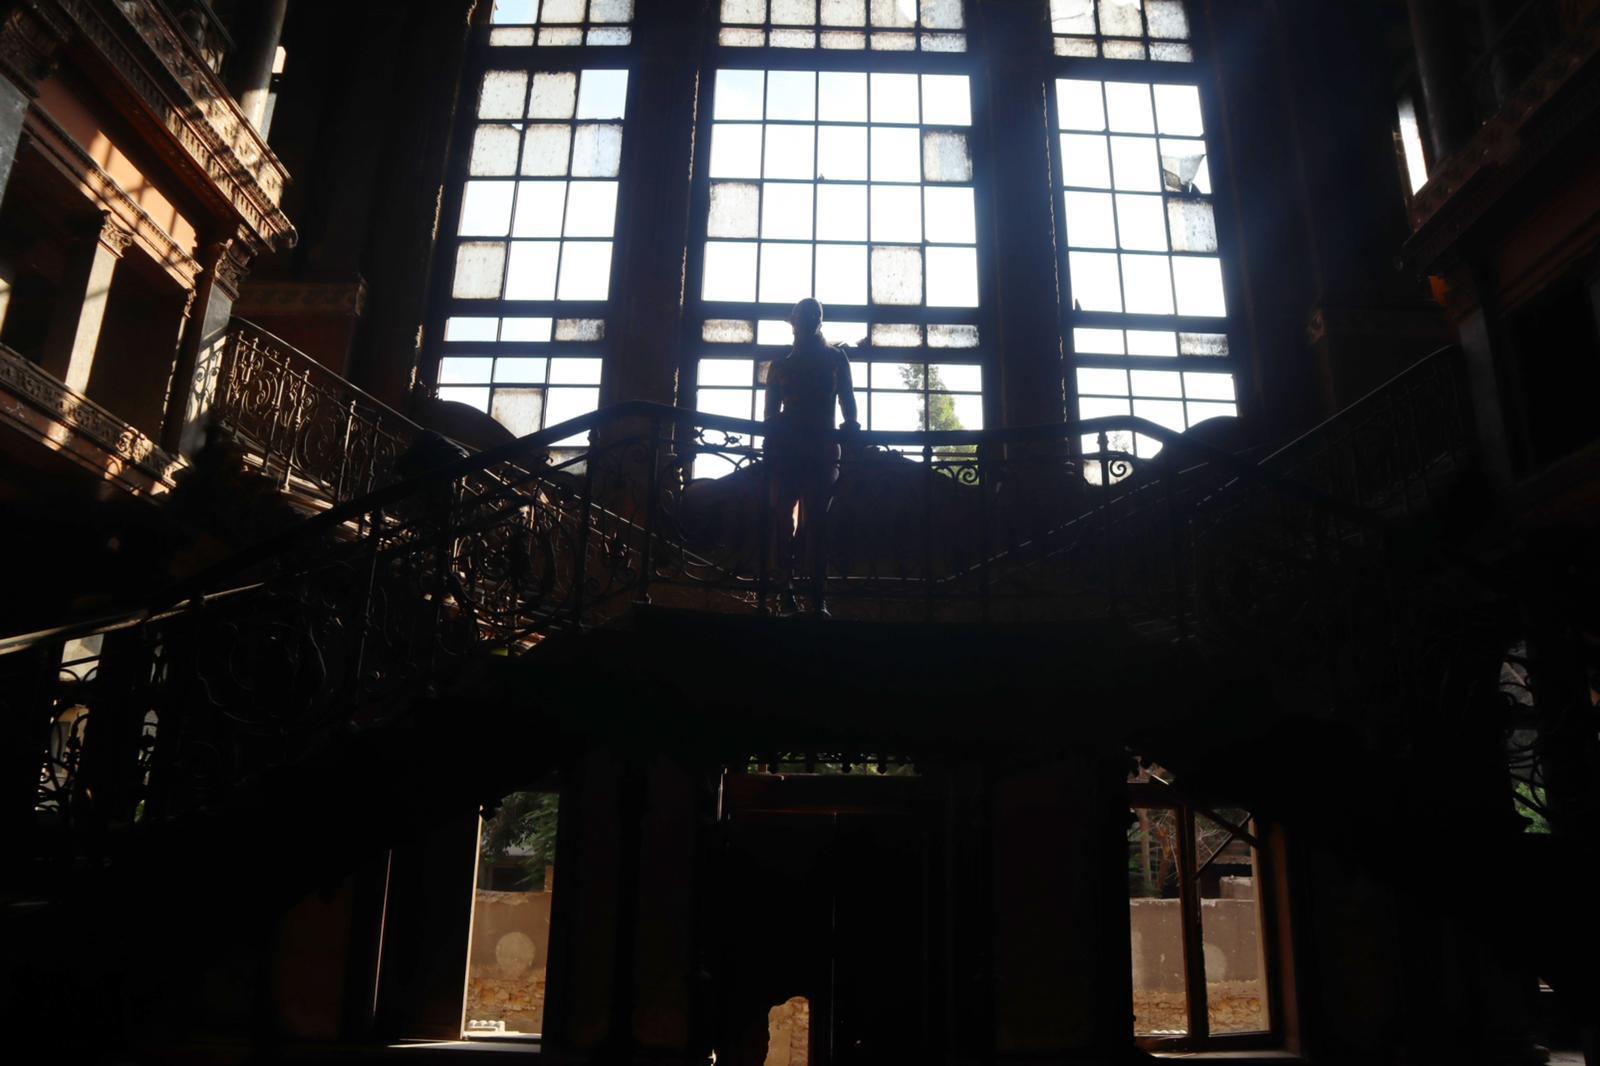 الأمريكية آمون ستار تطلق أول كليب غنائي يتم تصويره في قصر شامبليون